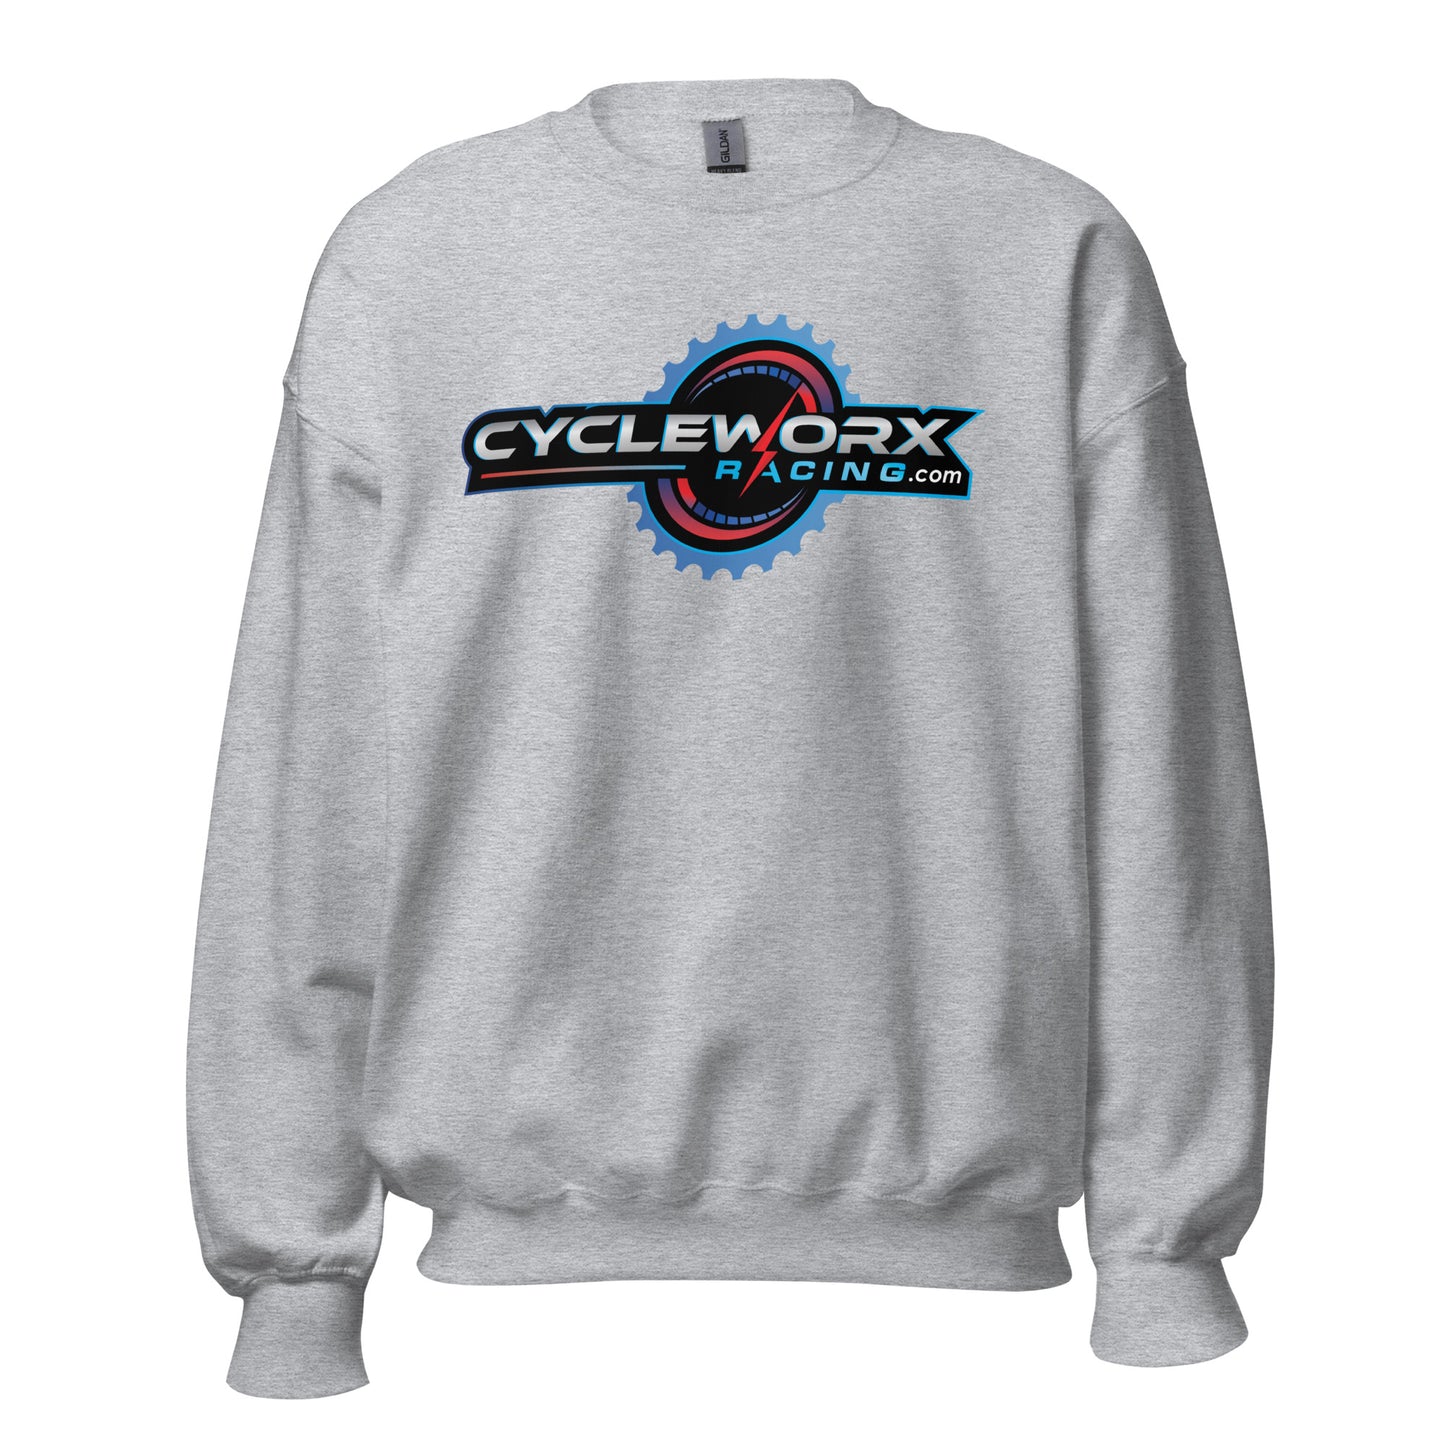 Cycleworx Racing Crewneck Sweater